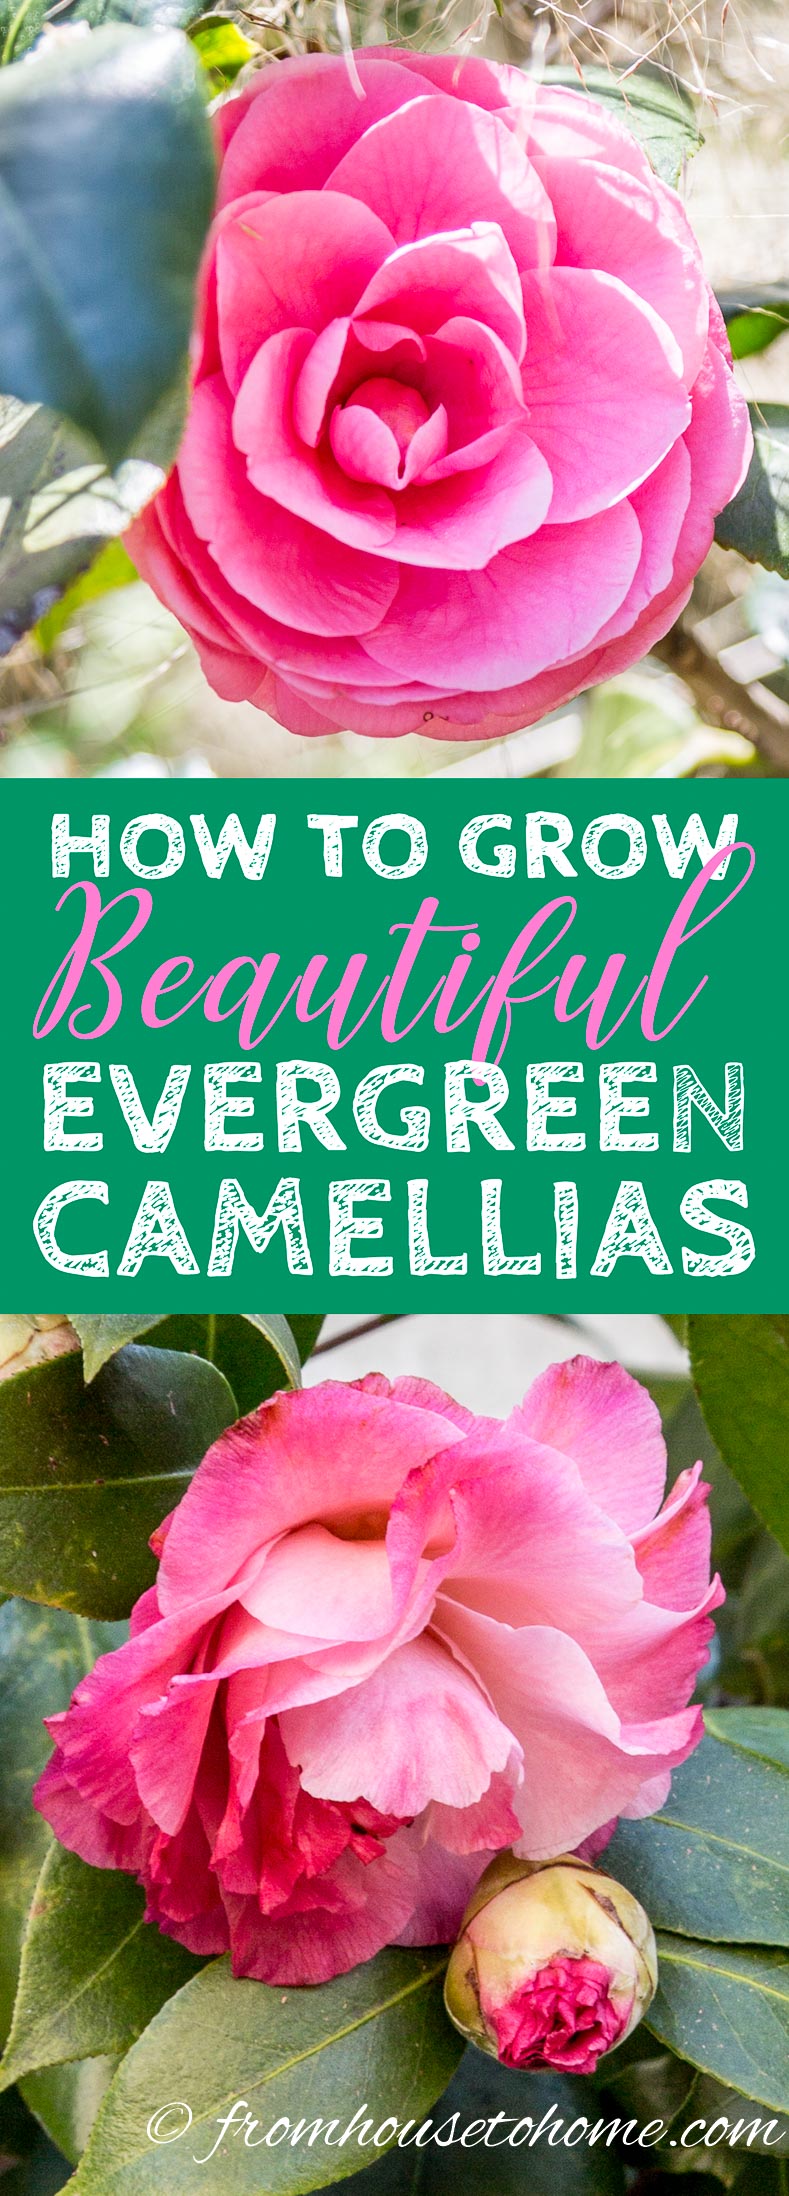 Camellia Care Guide: How To Grow Camellias